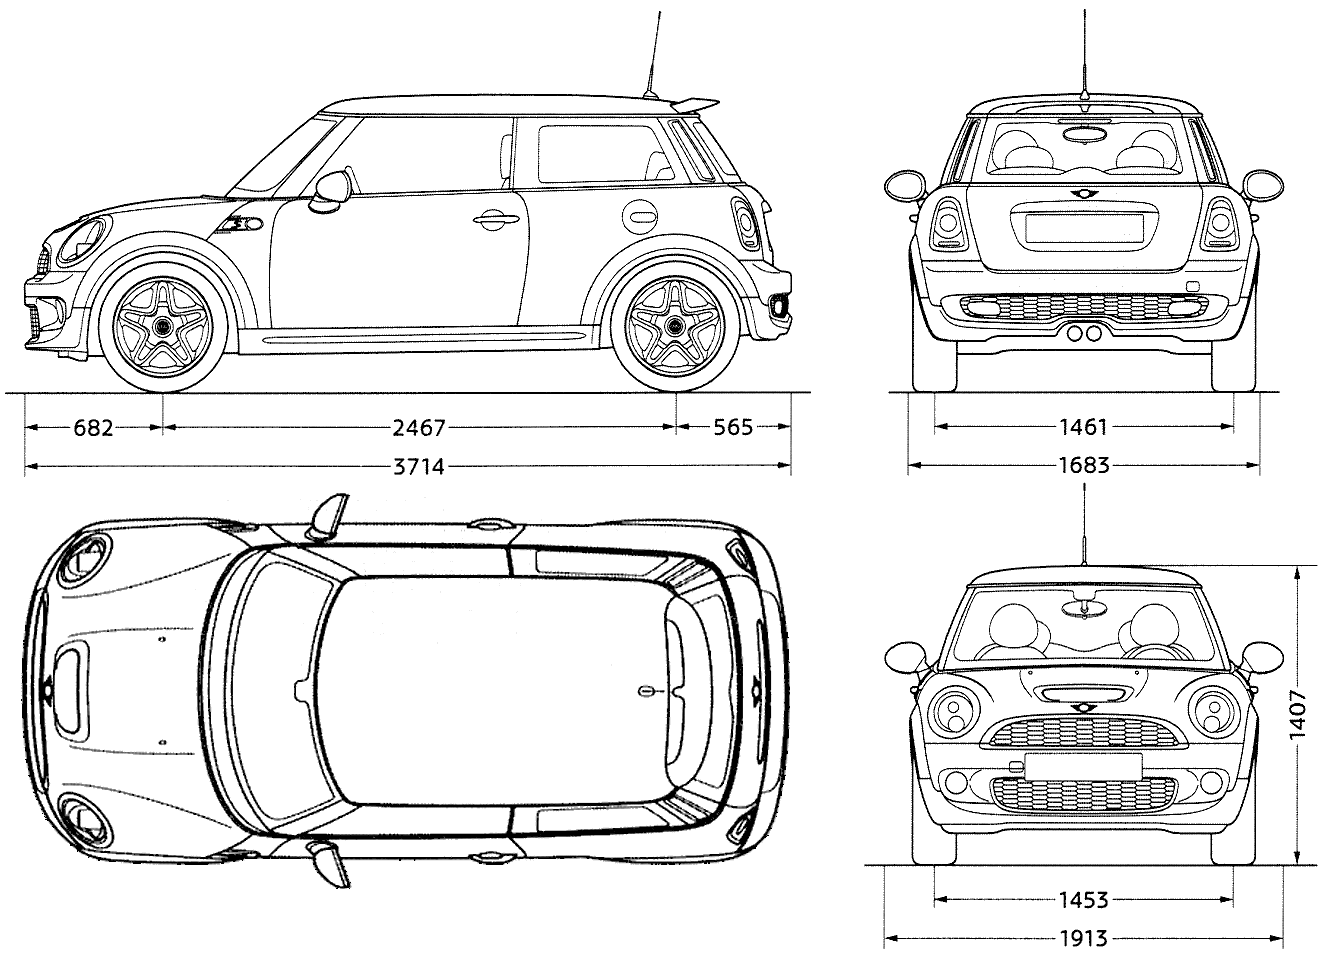 2007 Mini Cooper S Hatchback blueprints free - Outlines